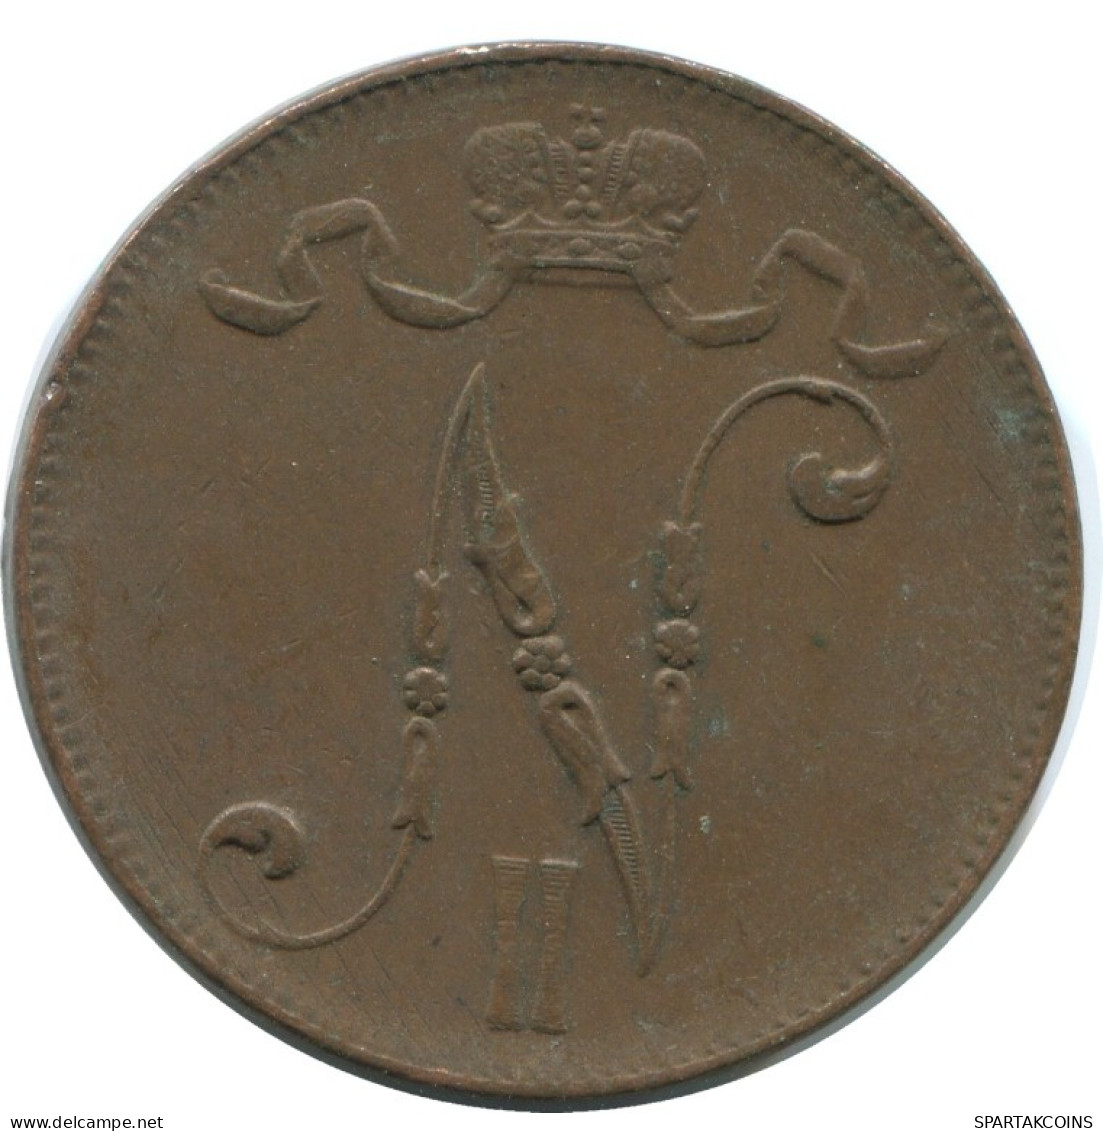 5 PENNIA 1916 FINLAND Coin RUSSIA EMPIRE #AB157.5.U.A - Finland